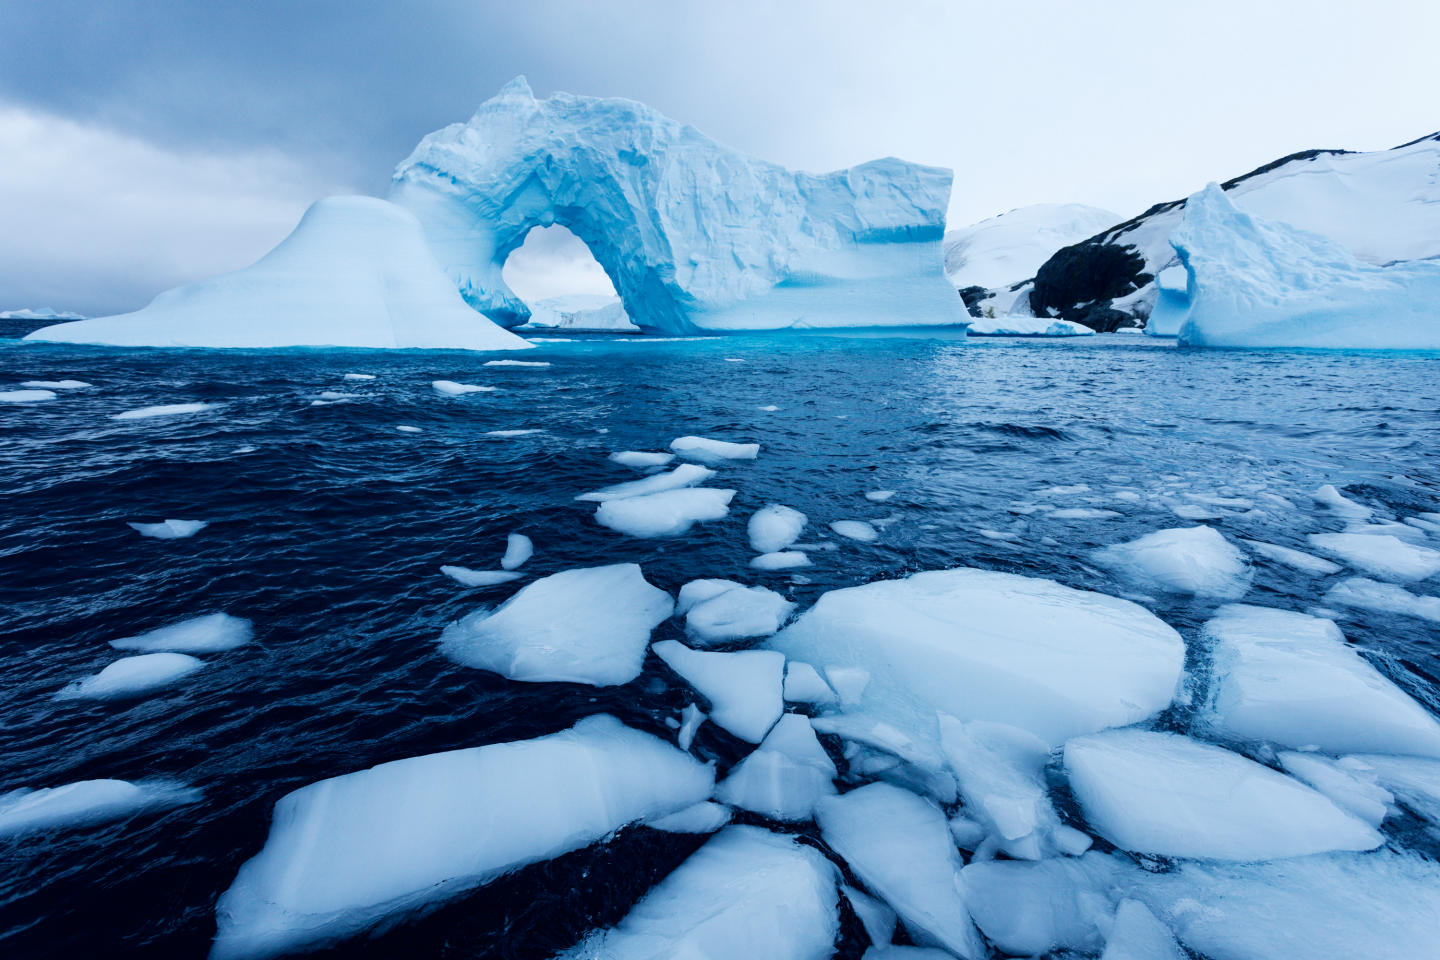 ذوبان سريع لأحد الأنهار الجليدية الضخمة في القارة القطبية الجنوبية.. والعلماء يحاولون اكتشاف السبب